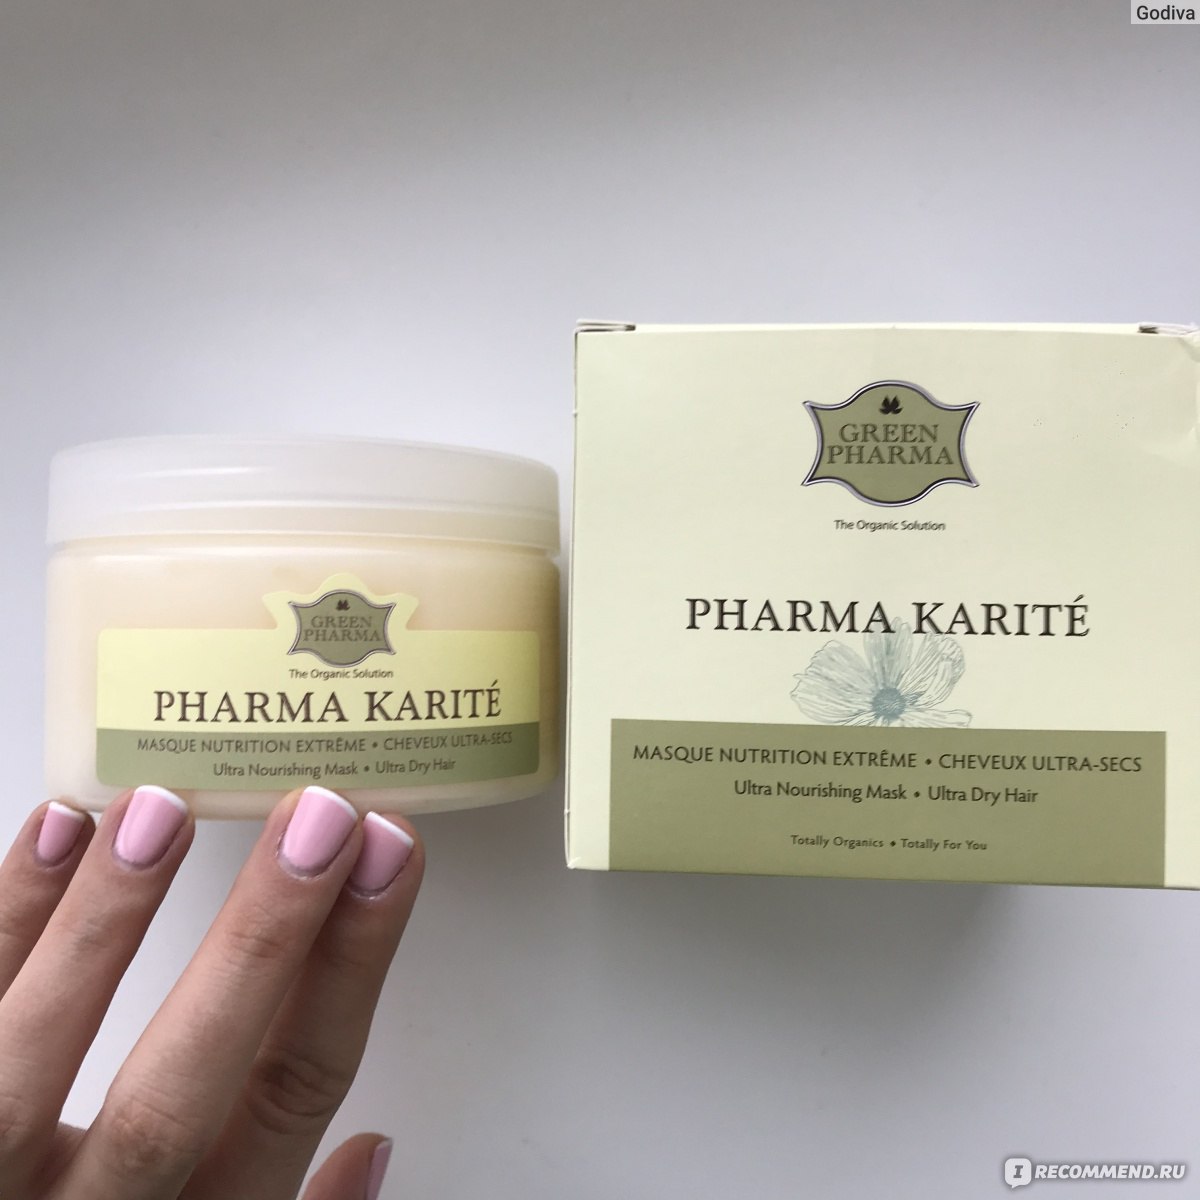 Маска greenpharma pharma karite питательная для сухих волос с маслом карите